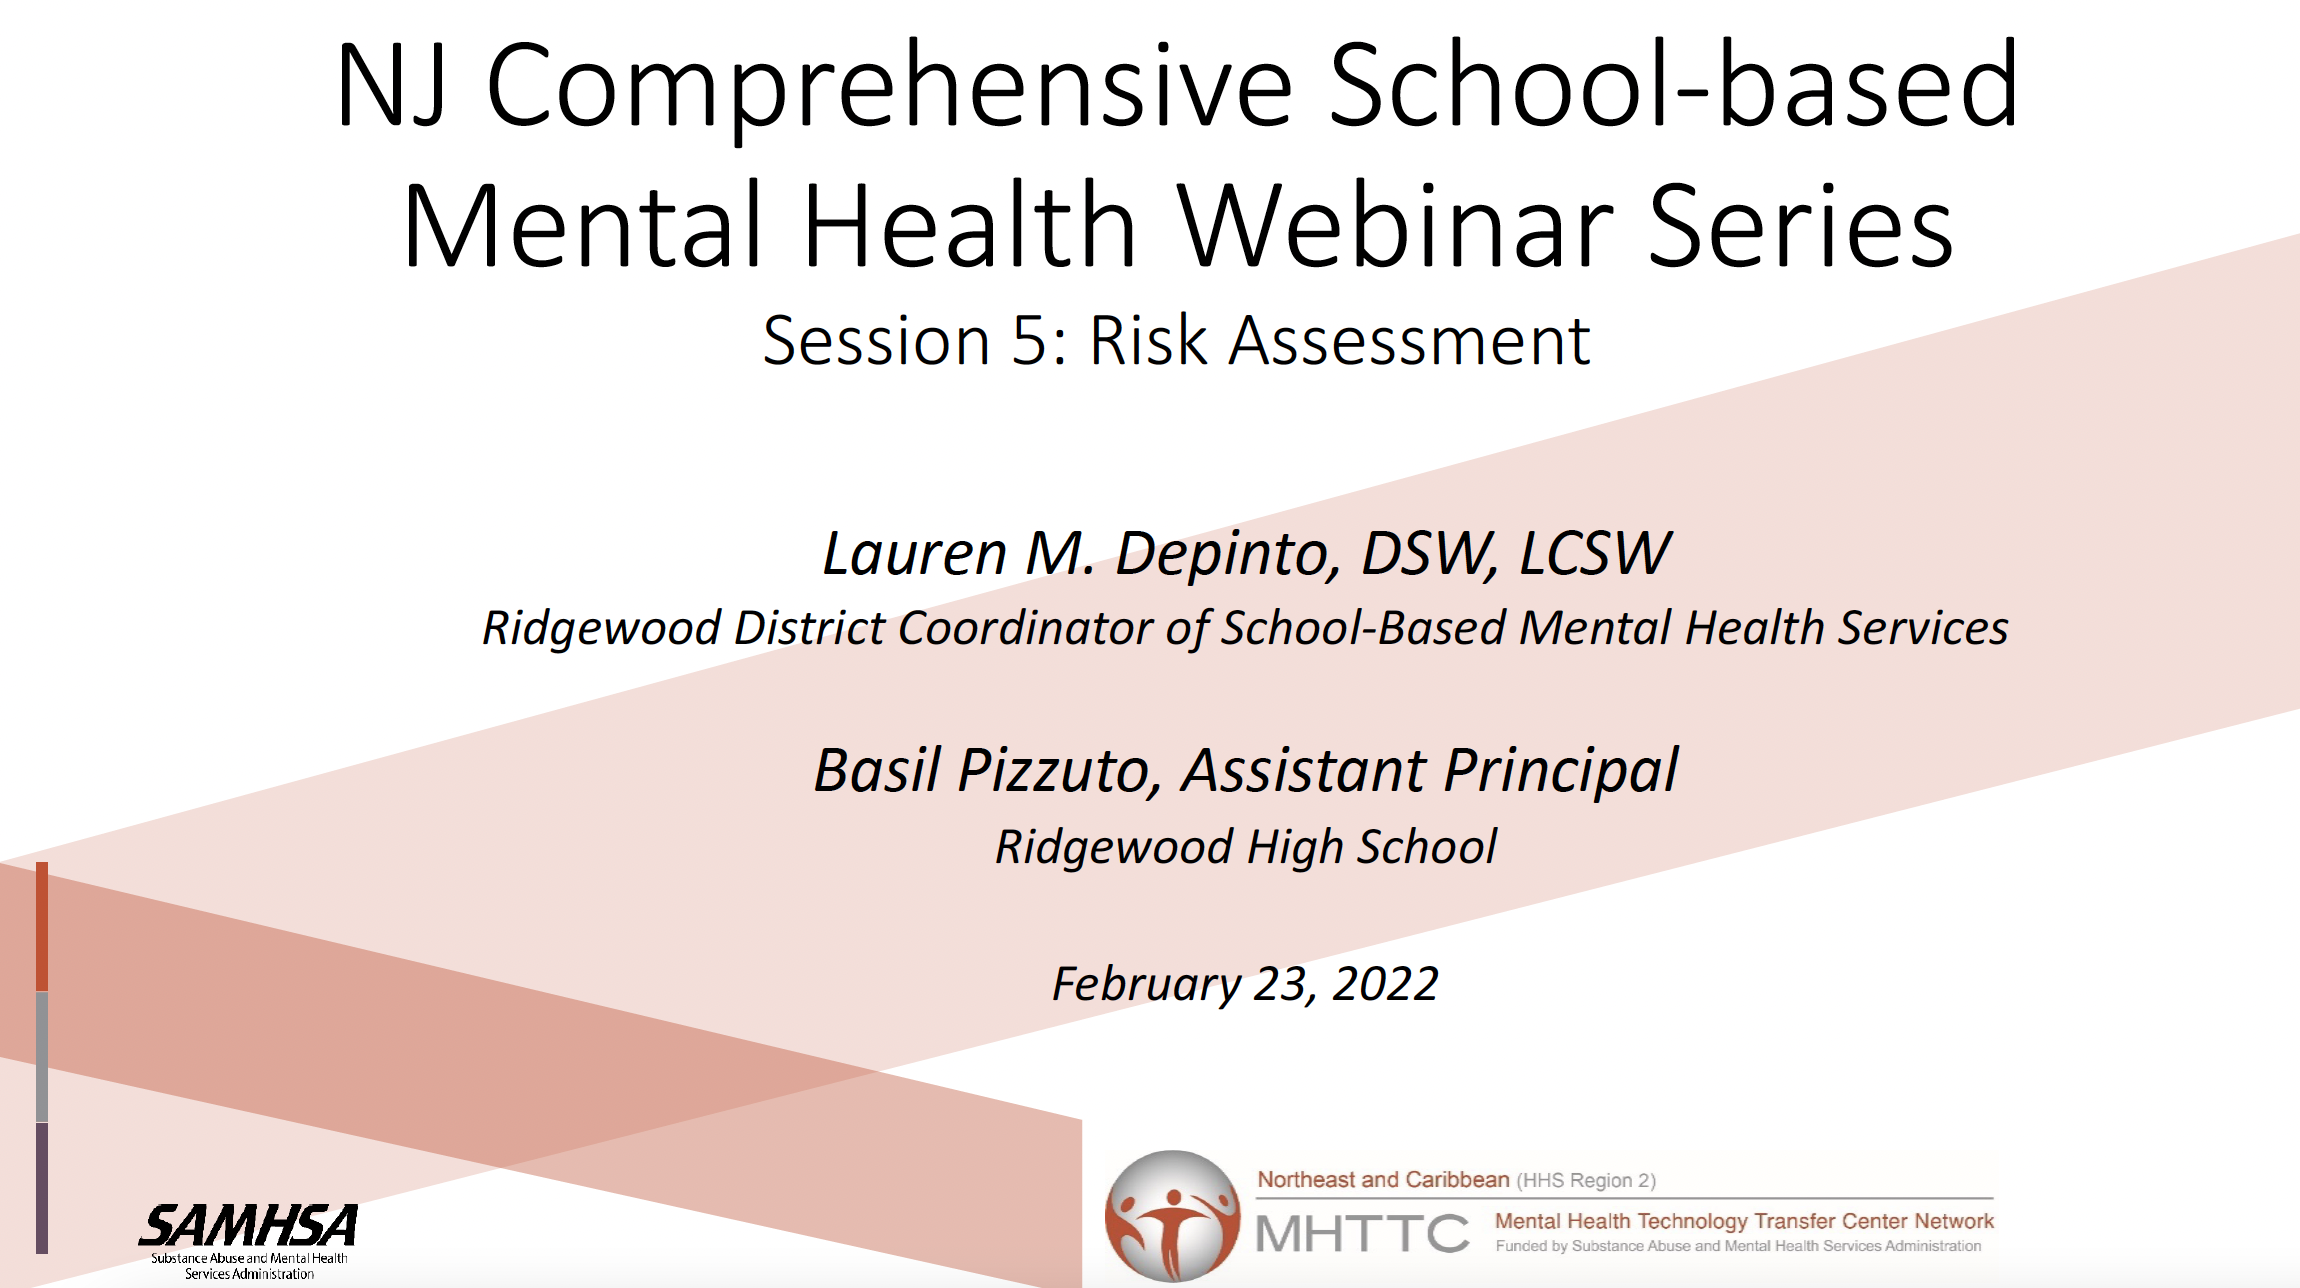 Screenshot of title slide. "NJ Comprehensive School-based Mental Health Webinar Series Session 5: Risk Assessment"